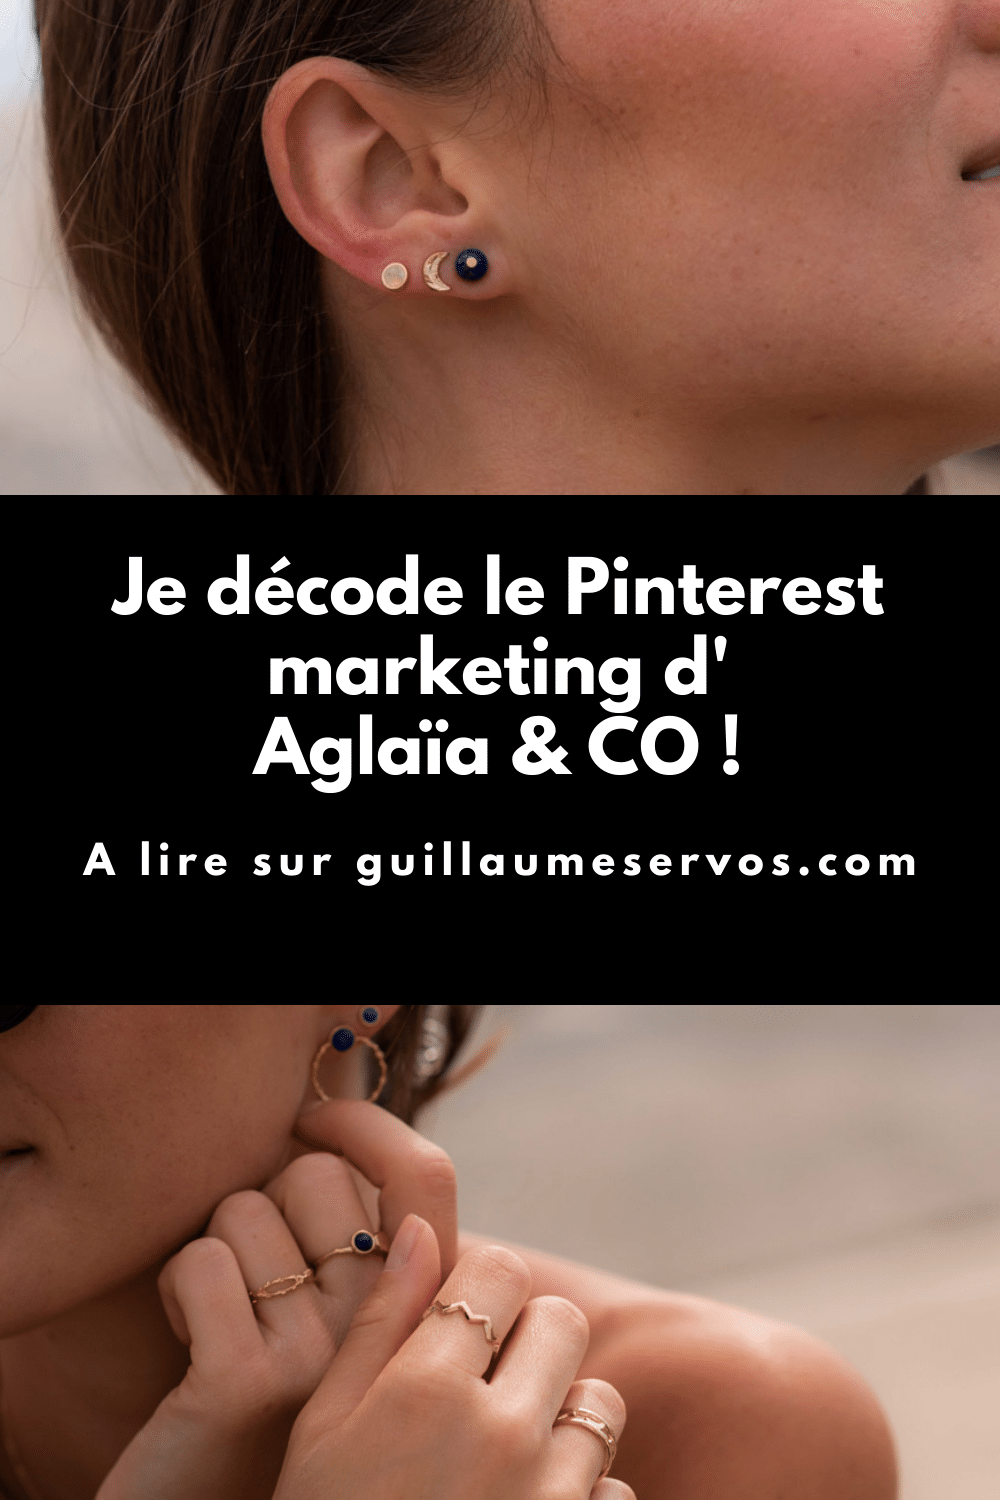 Je décode le marketing Pinterest d'Aglaïa & CO